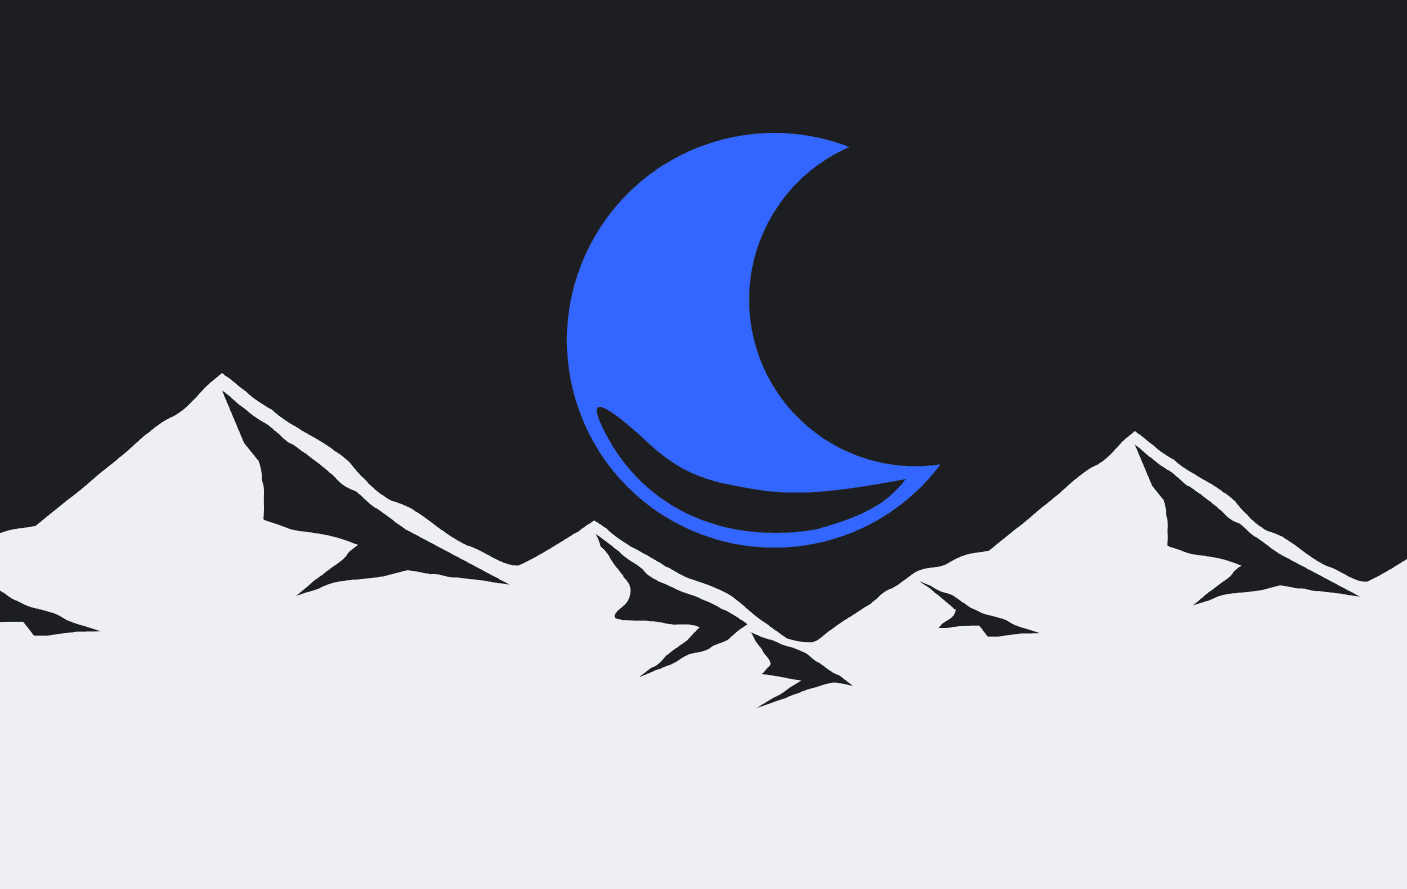 Arte com Lua crescente sobre montanhas brancas em meio ao fundo preto com estrelas azuis ilustrando o final do dia com o Fechamento de Mercado do Gorila.